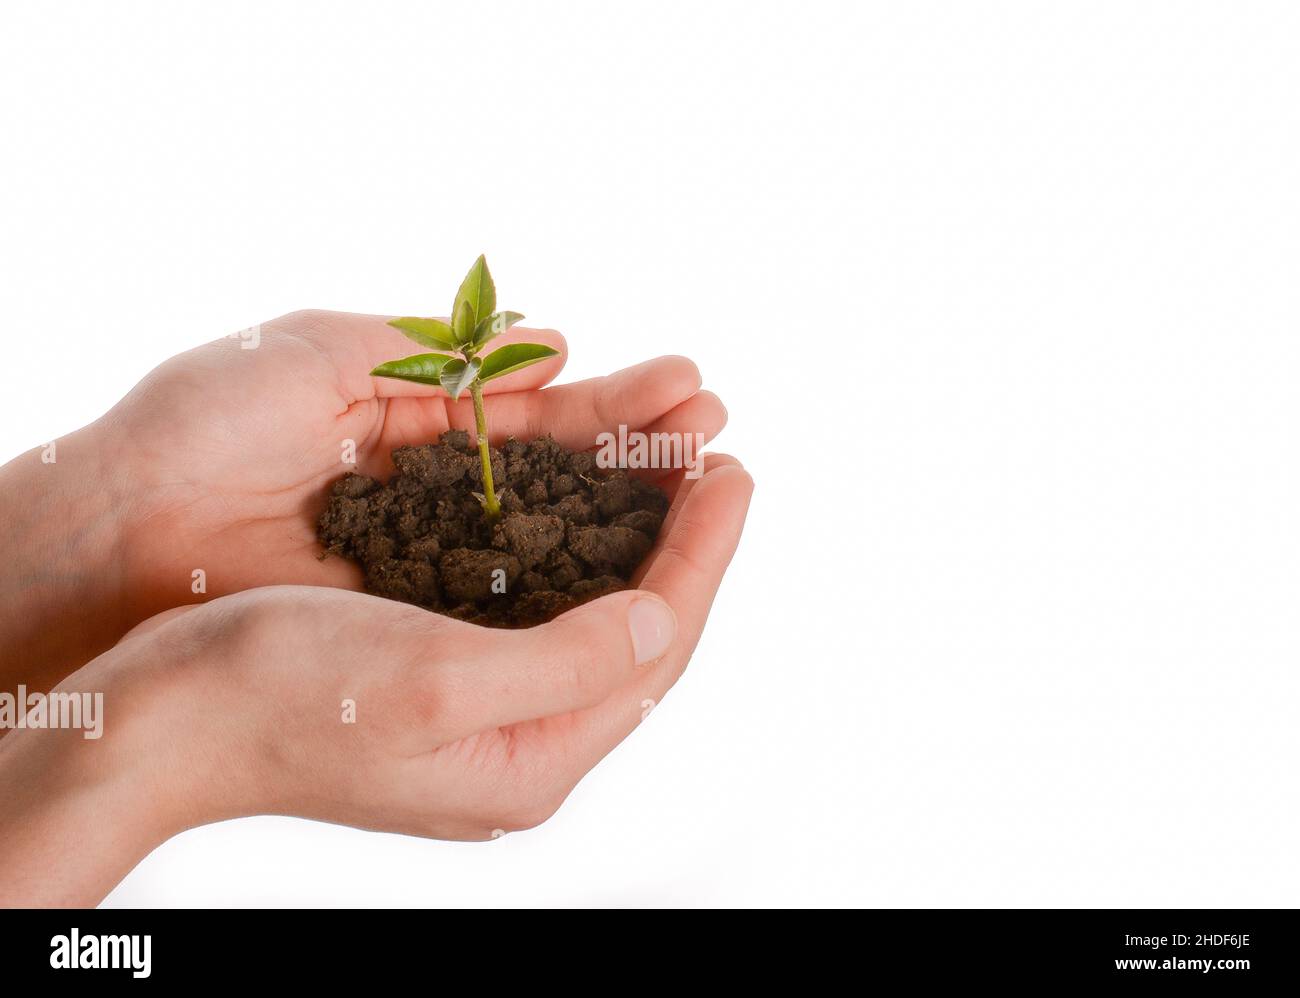 crecimiento, medio ambiente, ambientalismo, crecimientos, aumento, ambientes, ambientalismos Foto de stock